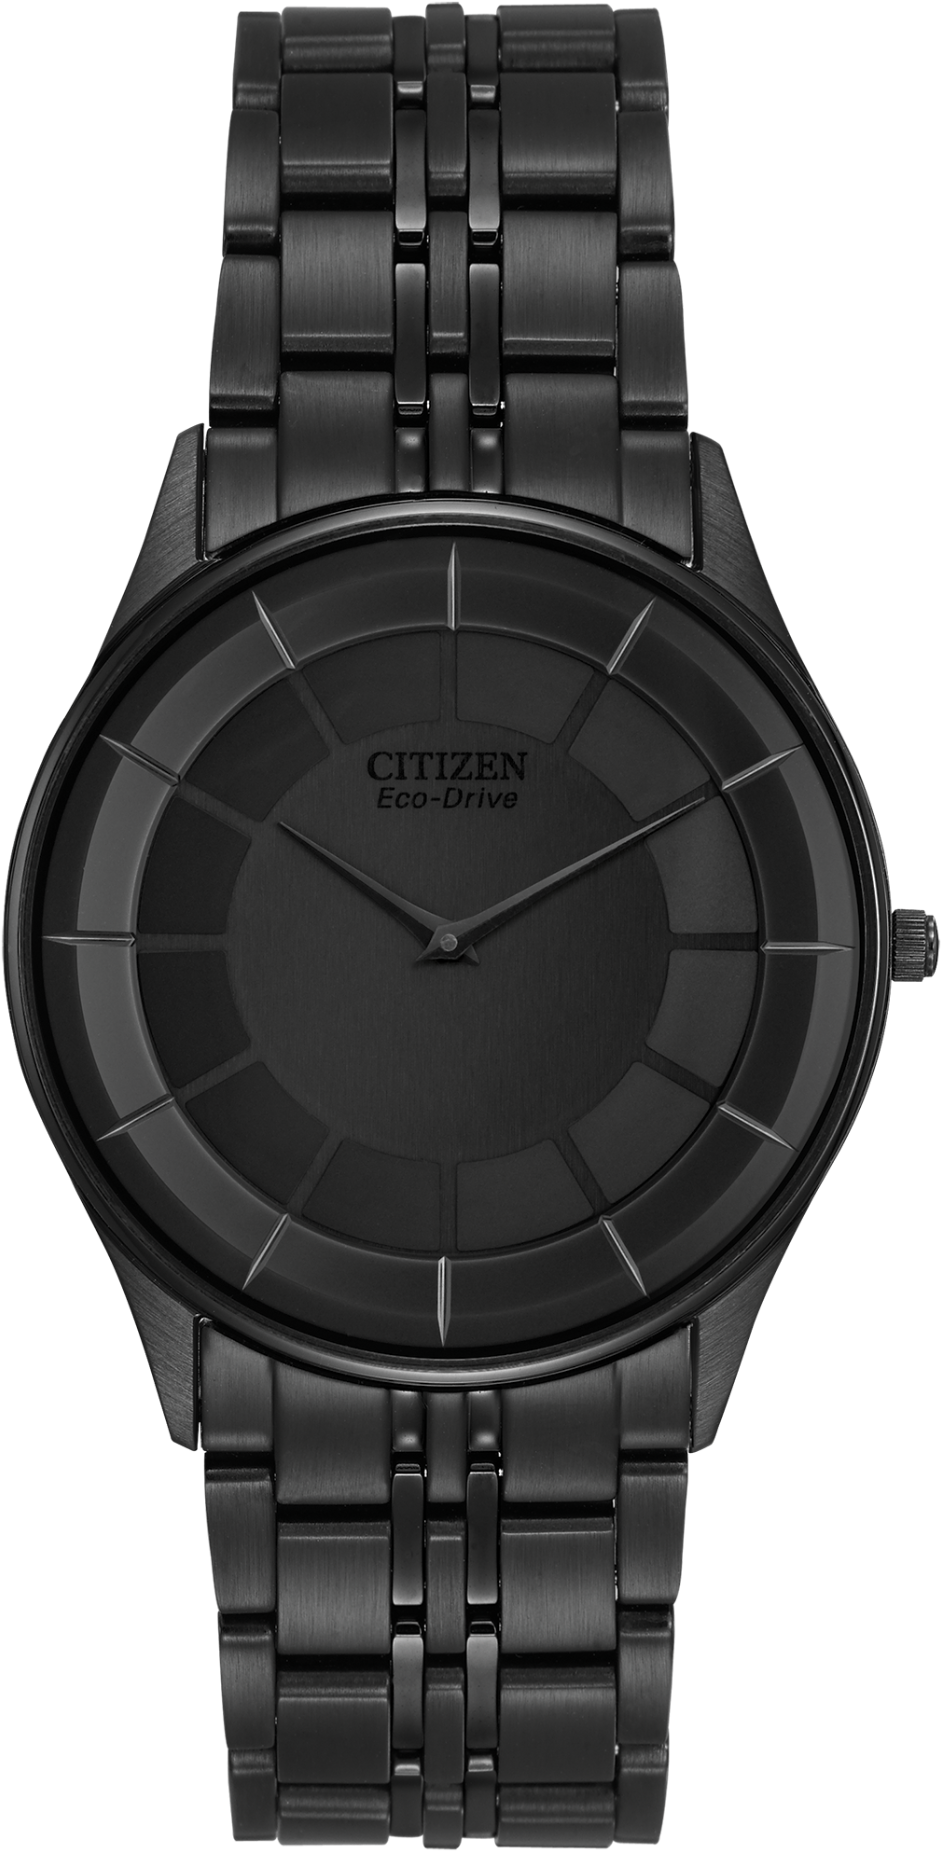 Black Citizen Eco Drive Wristwatch PNG image